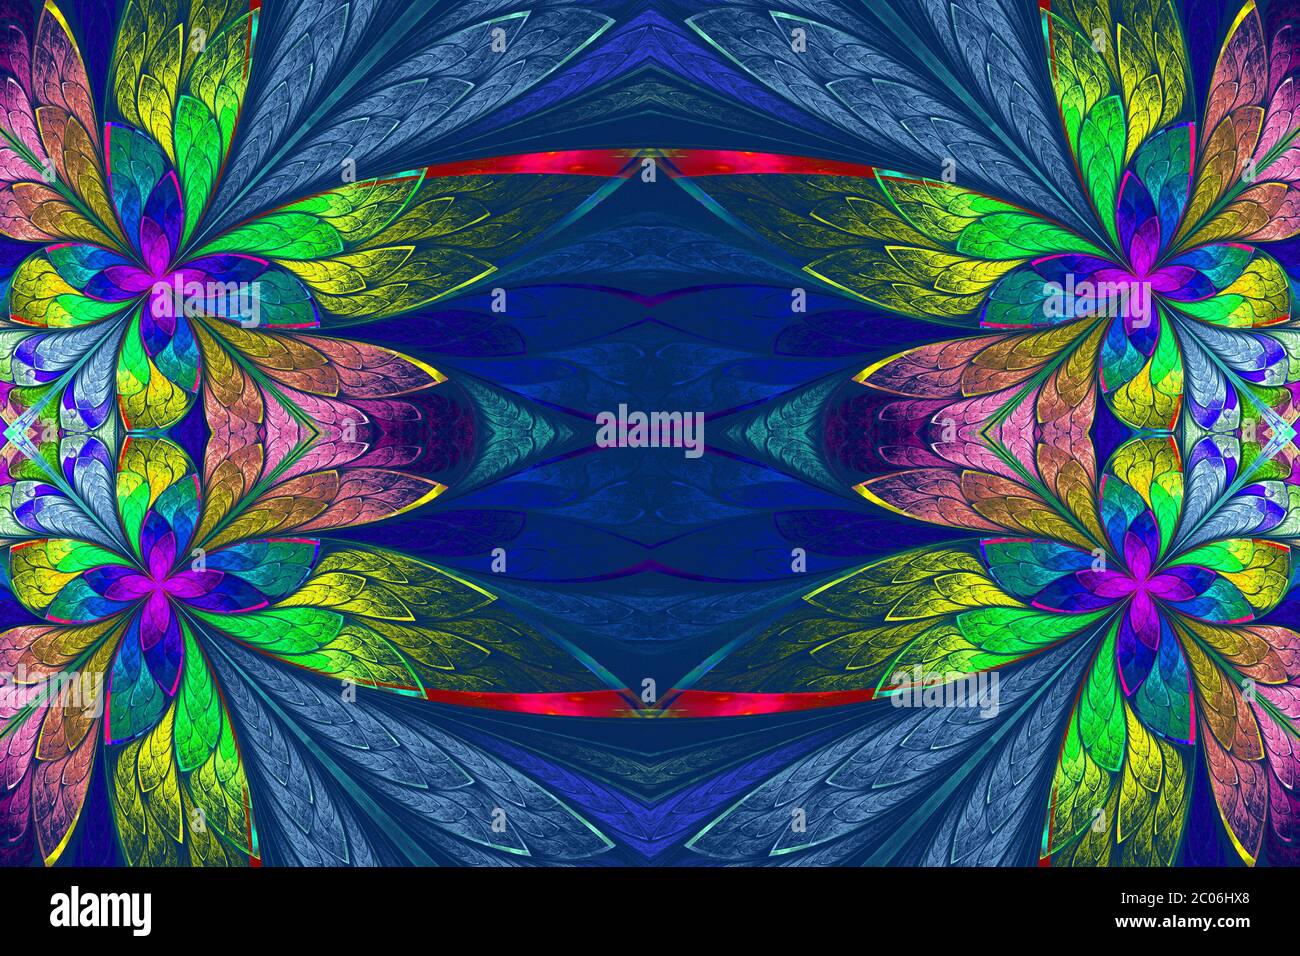 Motif floral multicolore symétrique de style vitrail sur fond bleu. Graphiques générés par ordinateur. Banque D'Images